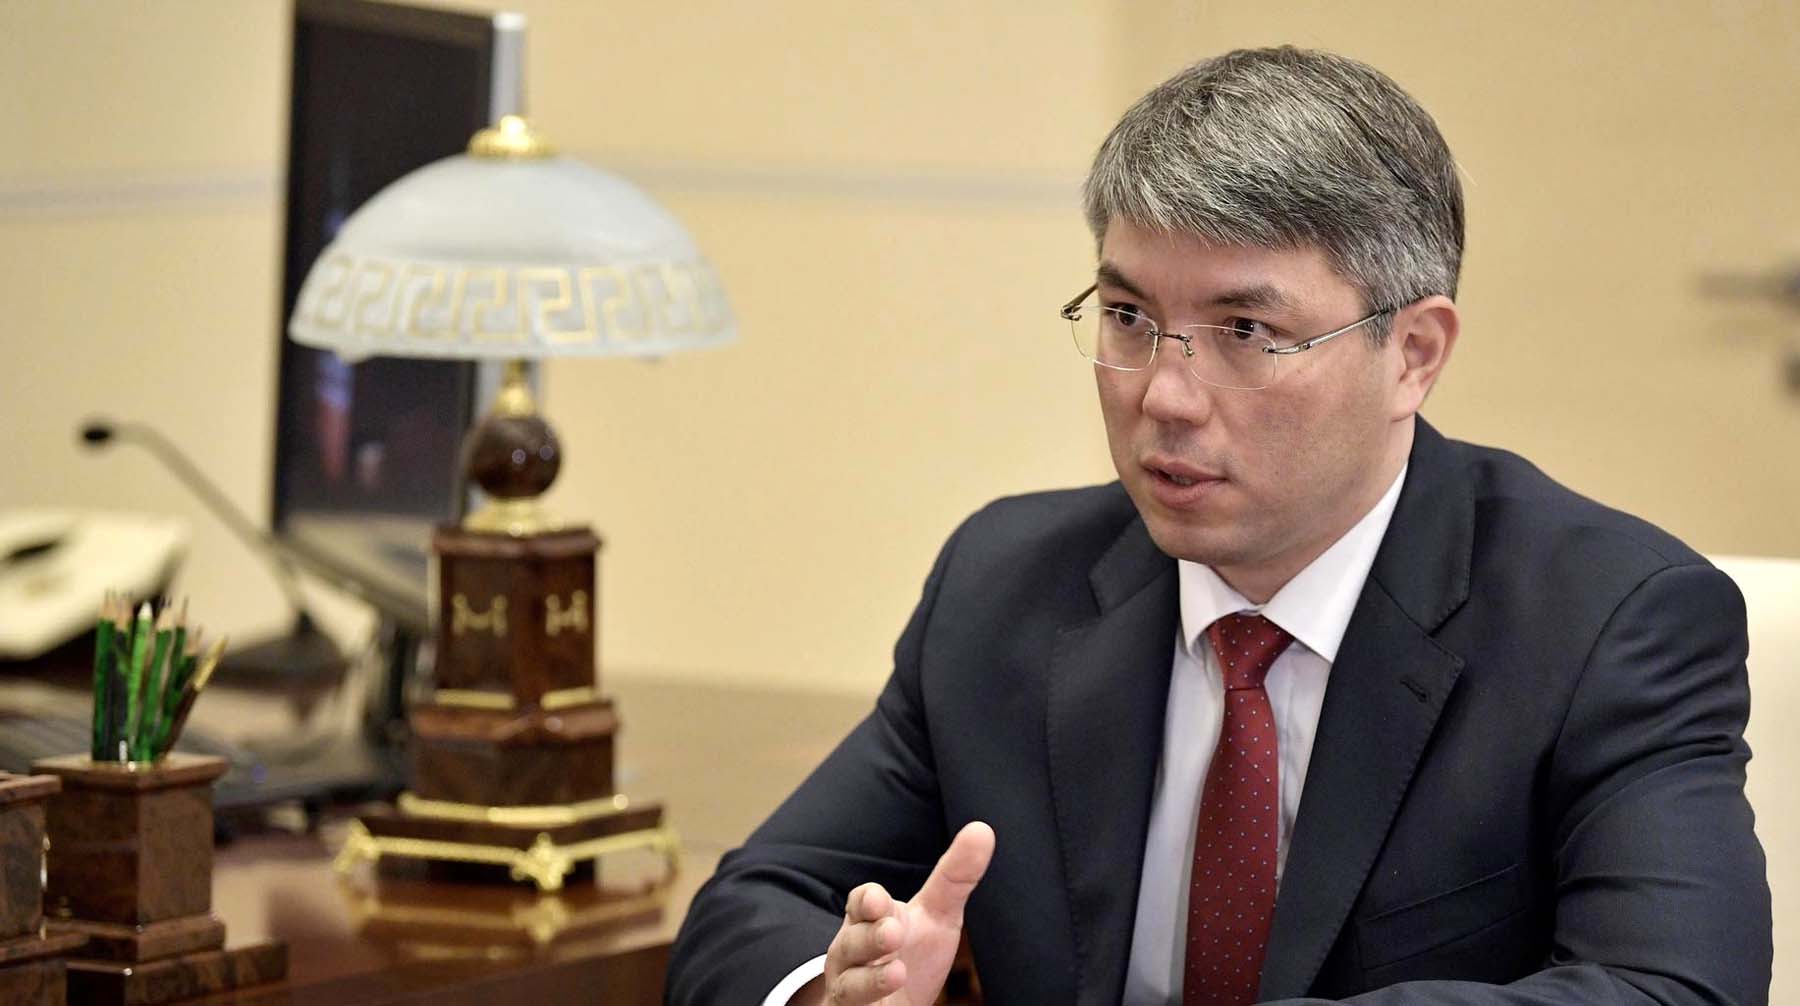 Цыденов попросил также «отдельно переговорить» с каждым из министров Алексей Цыденов